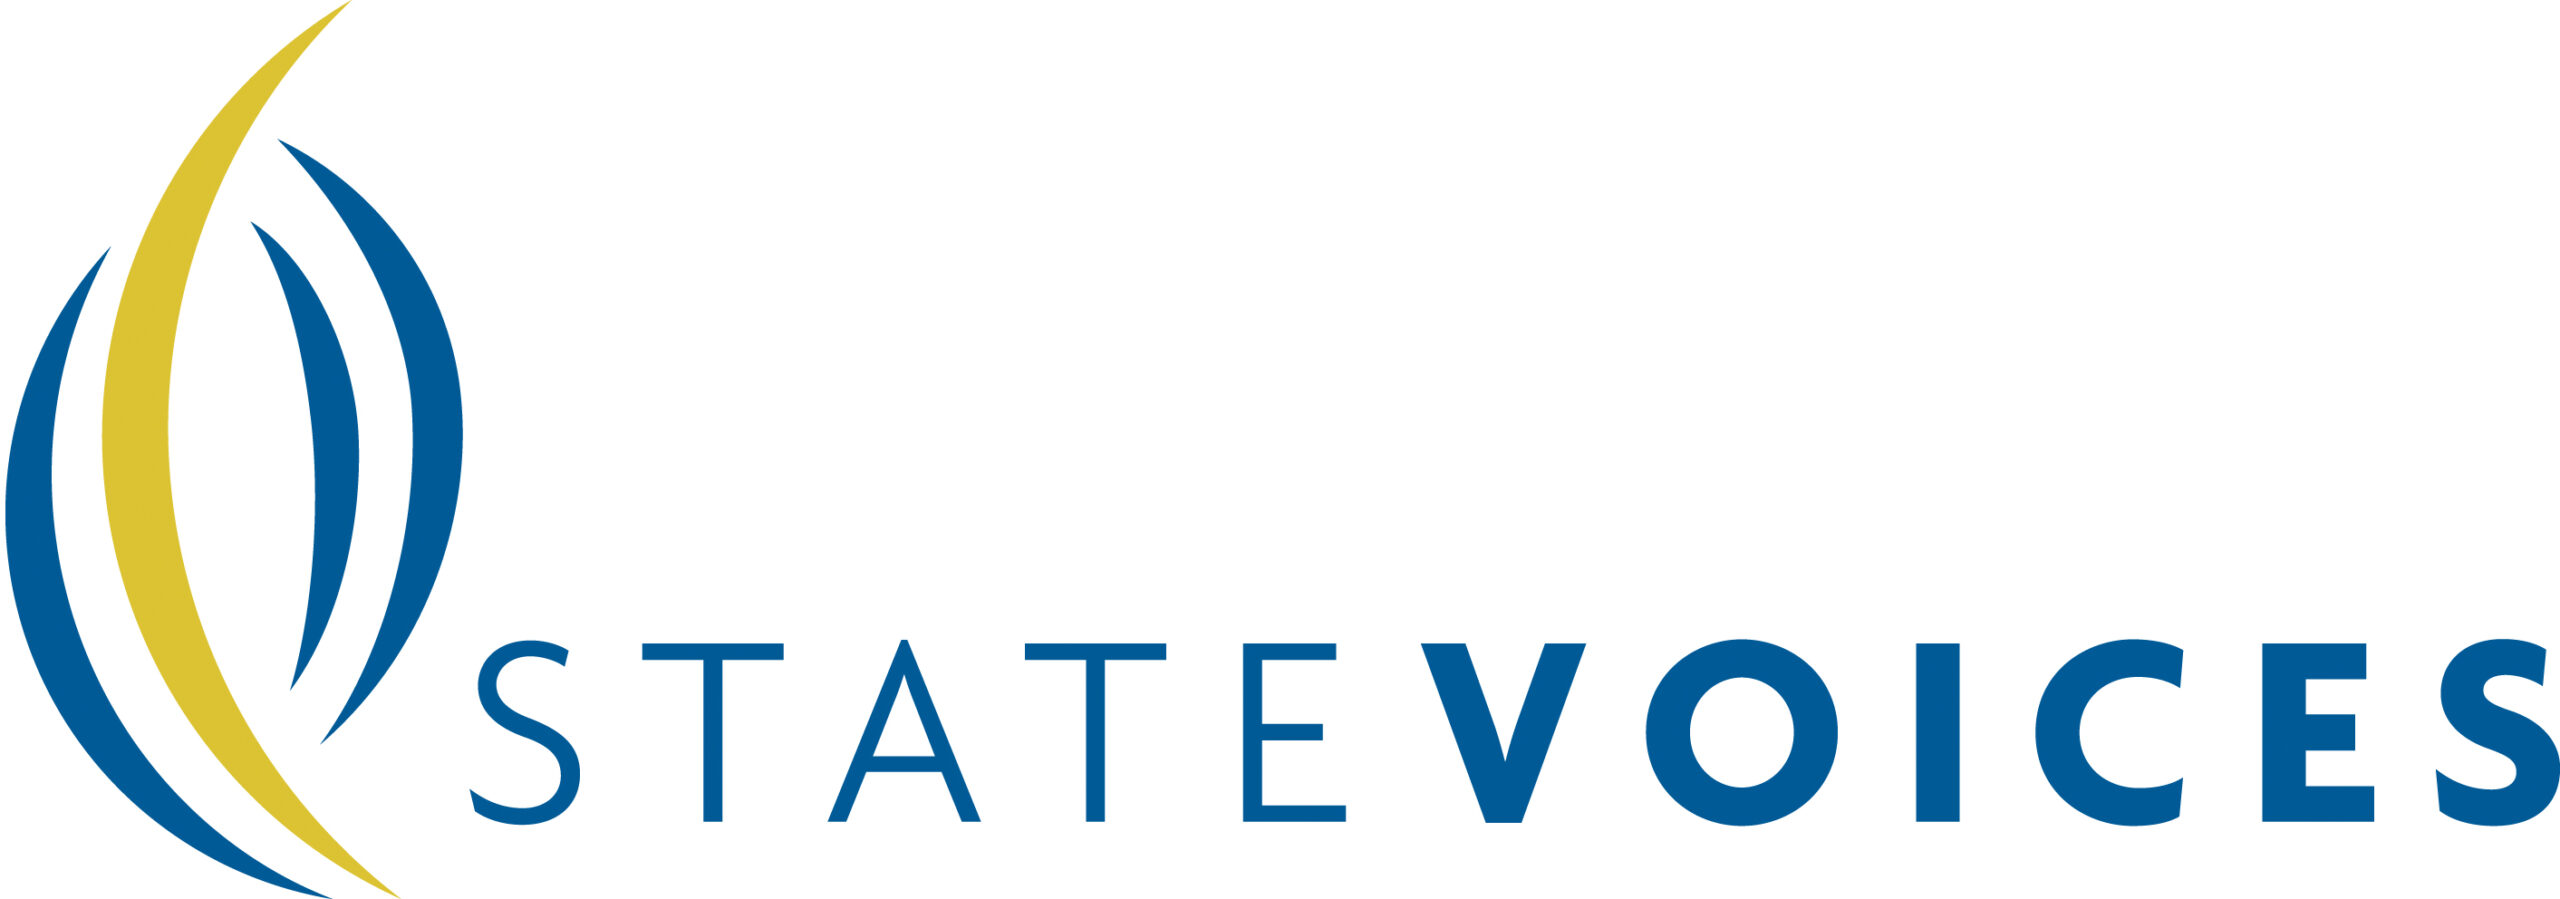 State Voices (Voces estatales)
